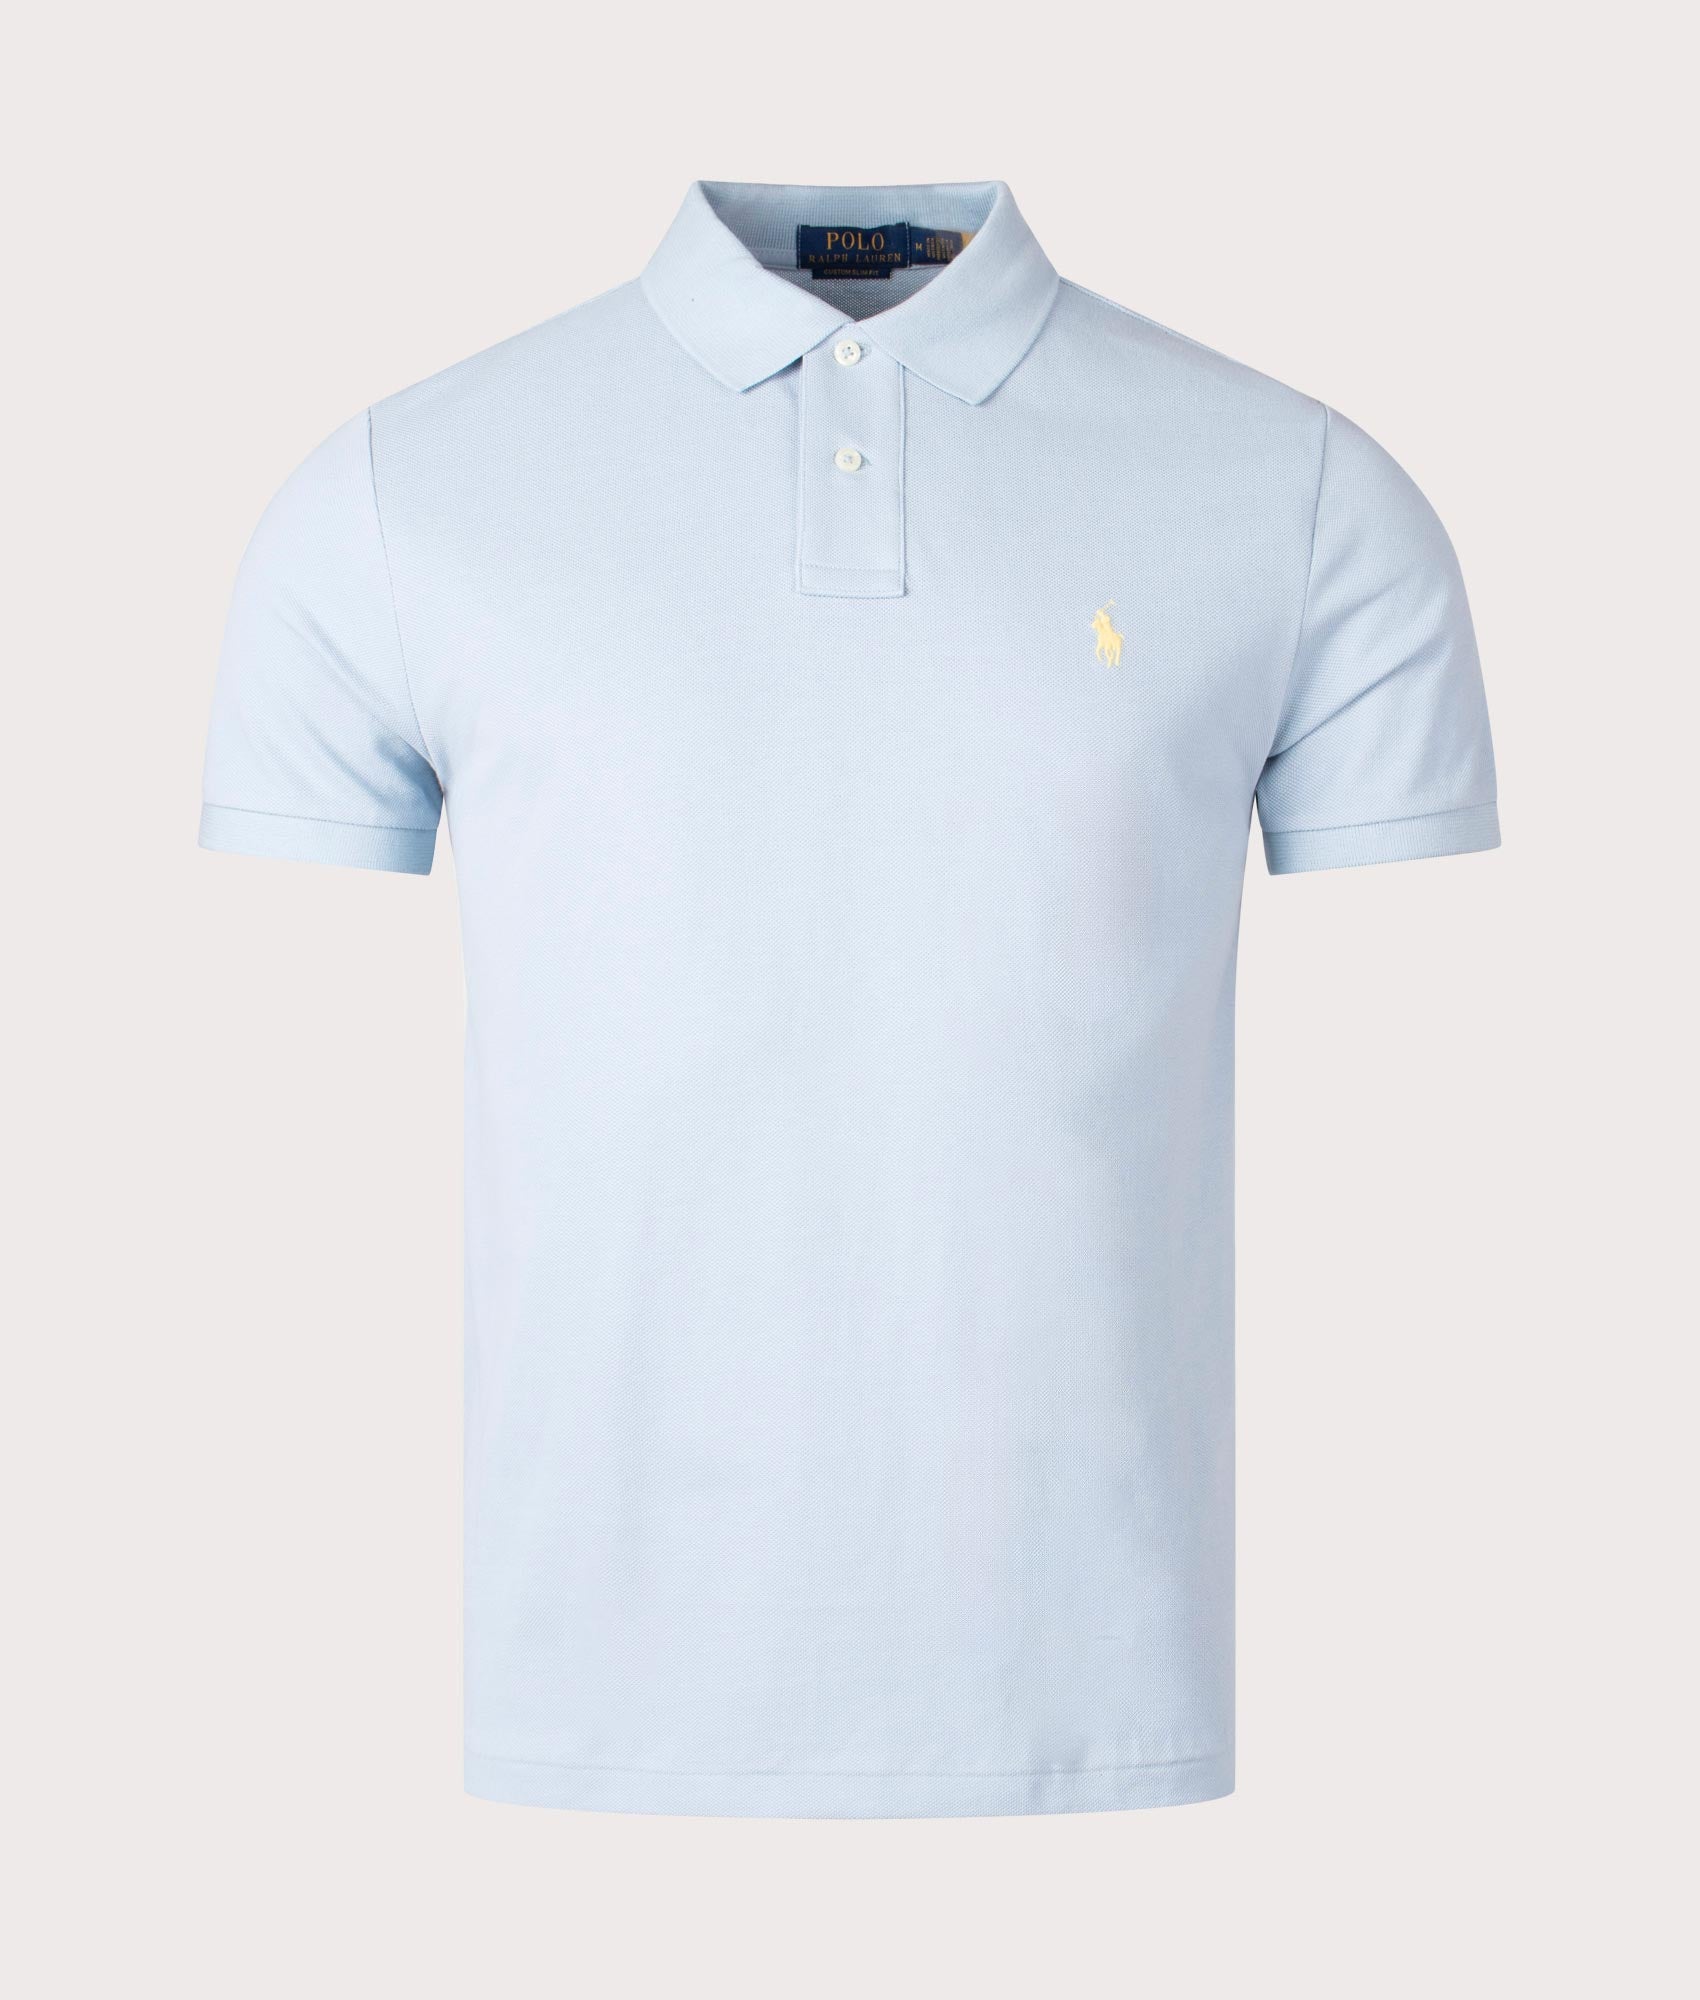 Polo Ralph Lauren Mens Custom Slim Fit Mesh Polo Shirt - Colour: 365 Alpine Blue - Size: Large